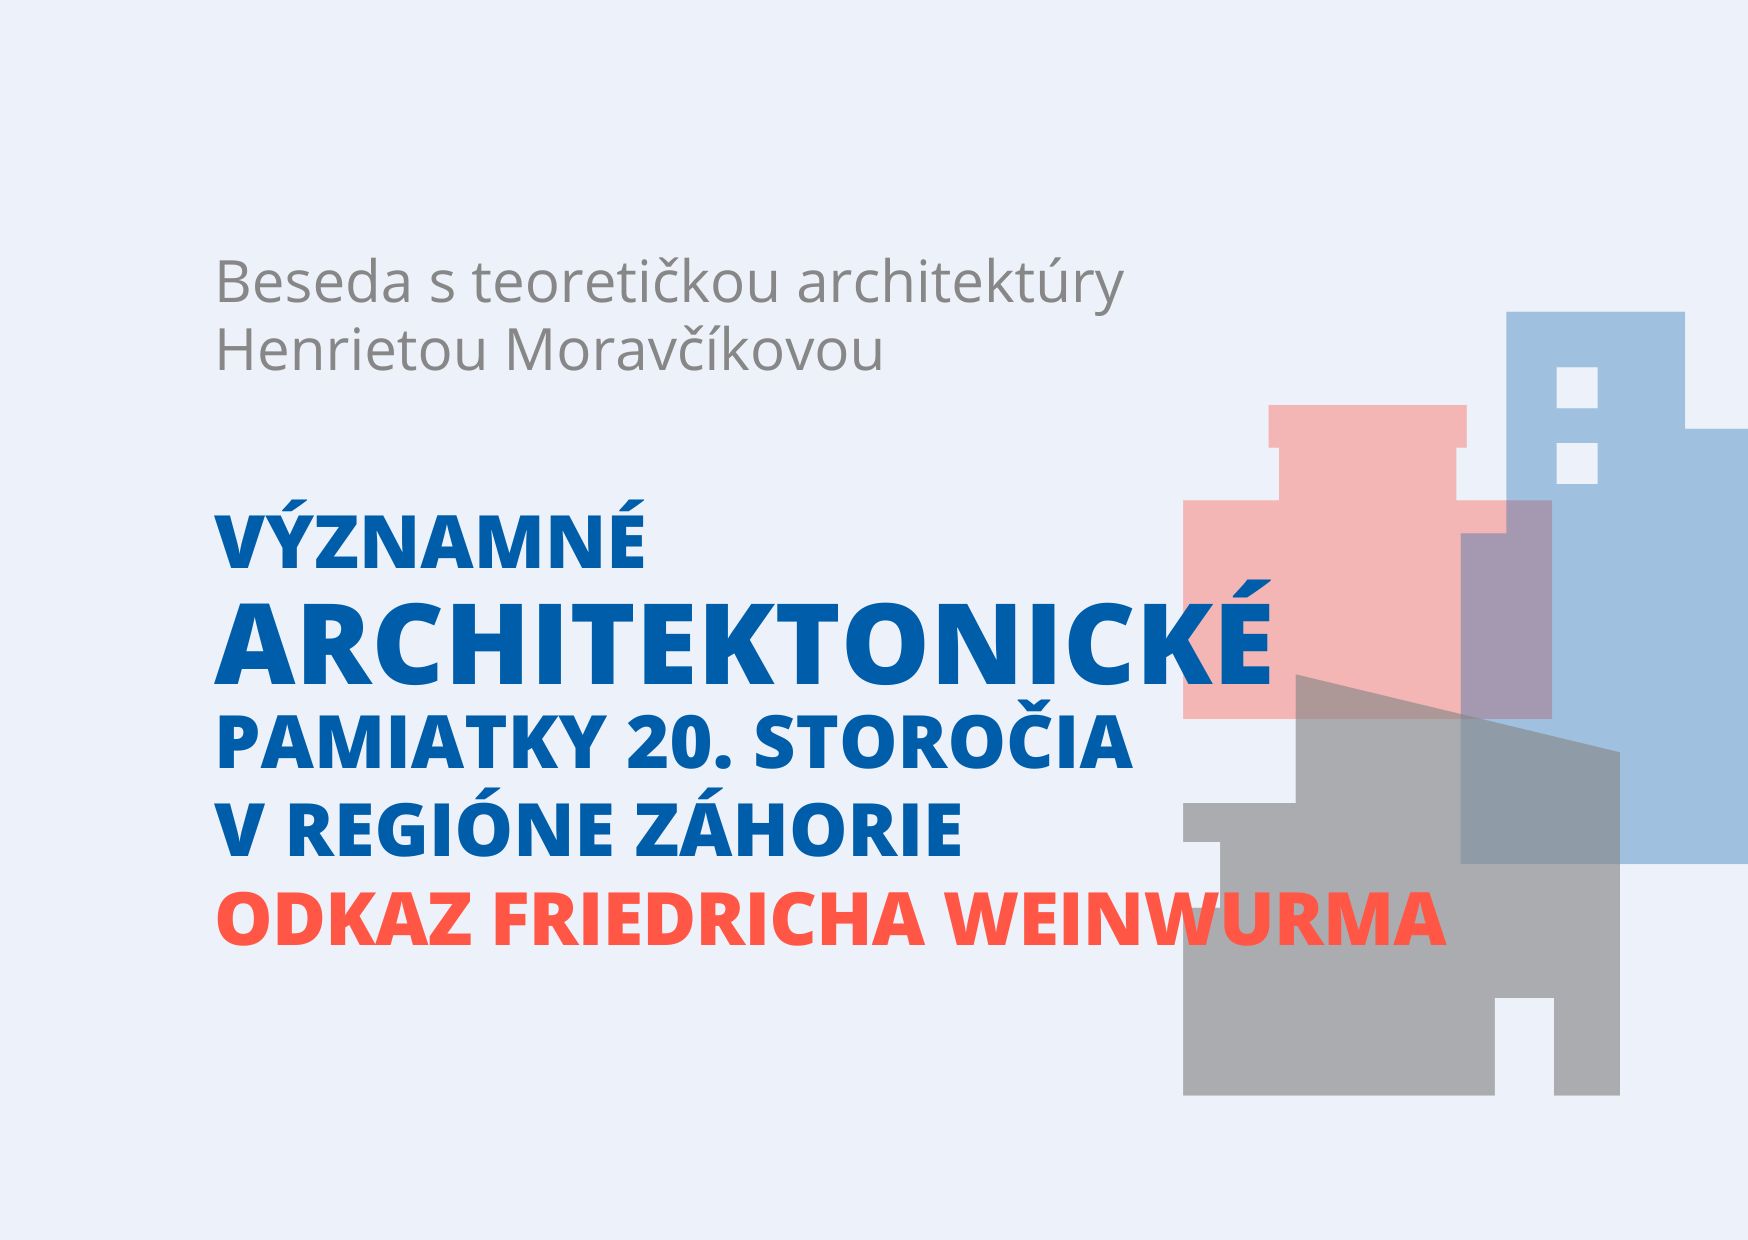 Významné architektonické pamiatky 20. storočia na Záhorí - odkaz Friedricha Weinwurma